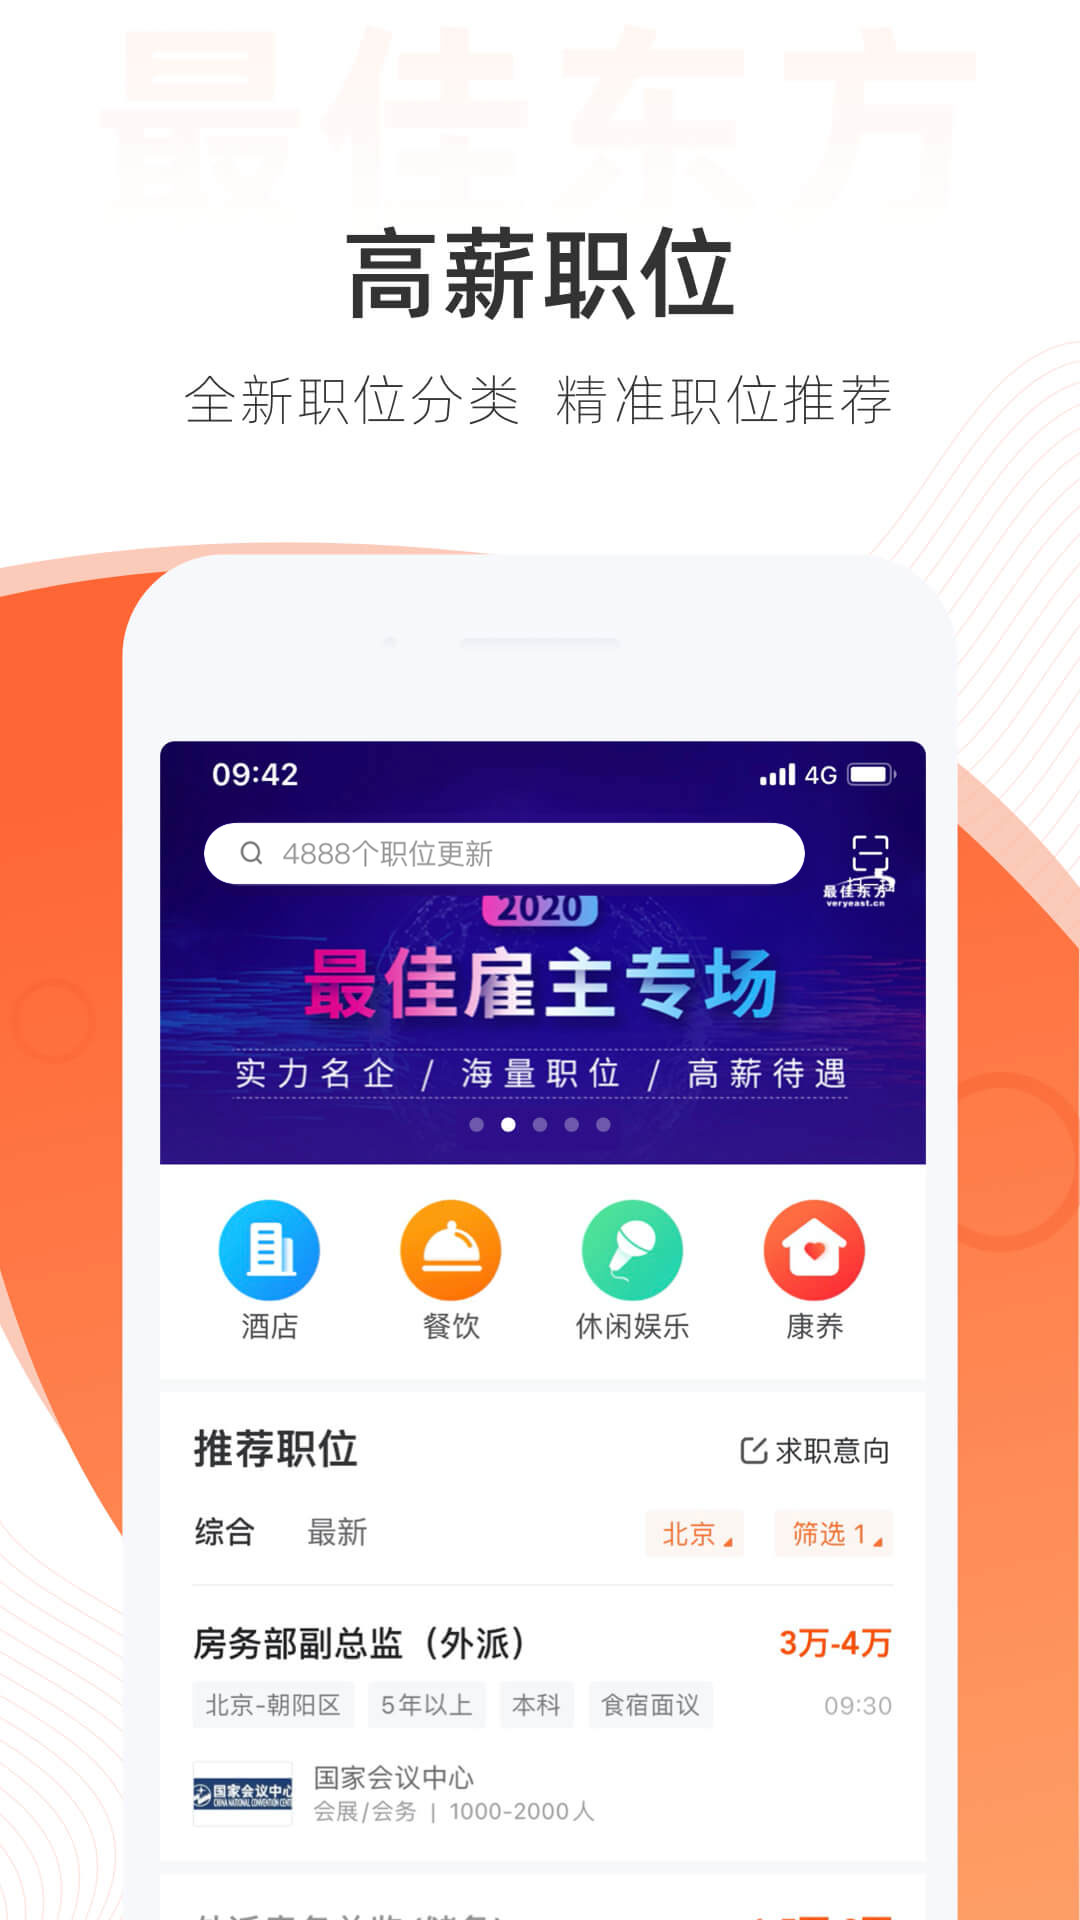 最佳东方招聘网下载app-最佳东方(酒店人才招聘)v6.2.3 安卓版